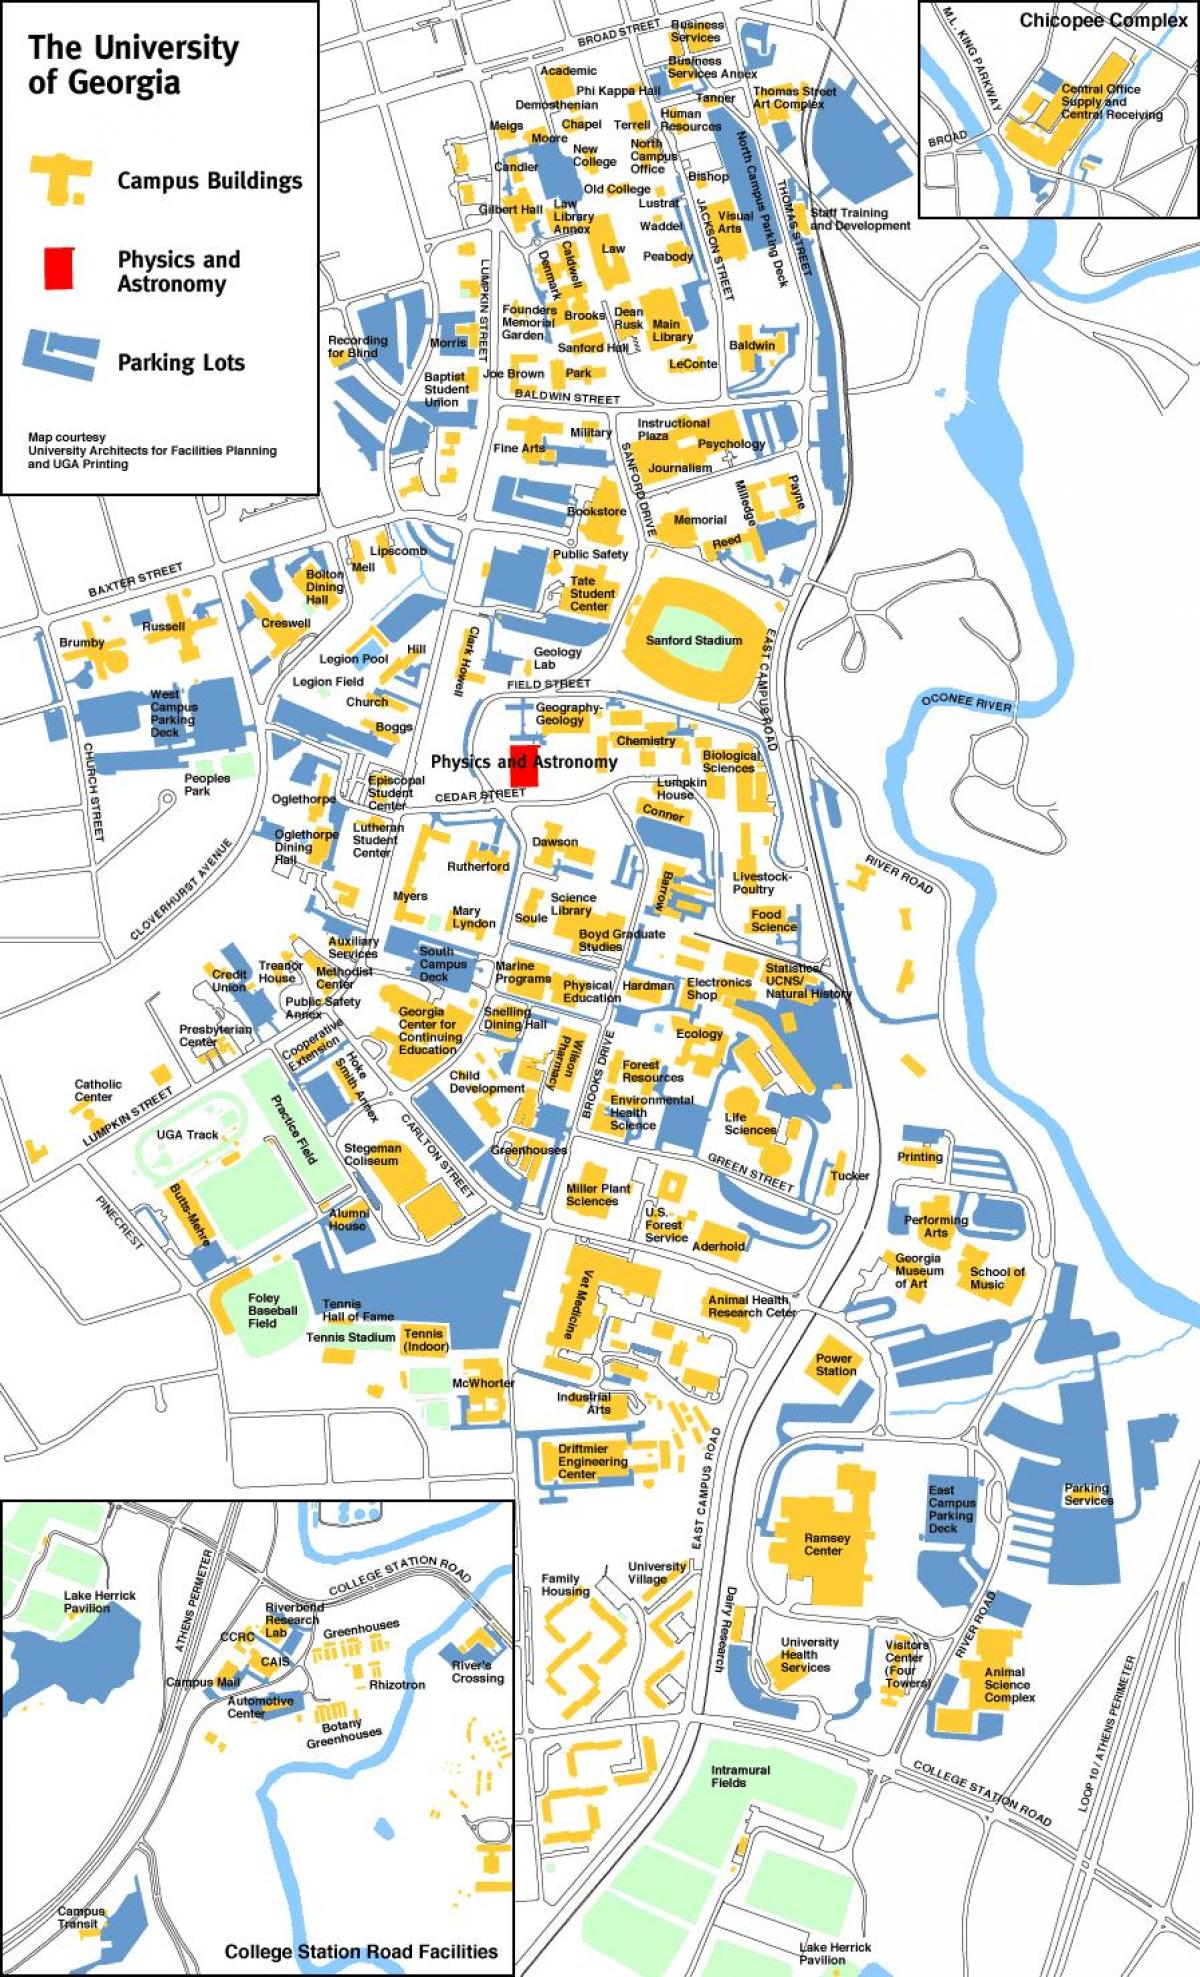 საქართველოს უნივერსიტეტი რუკა